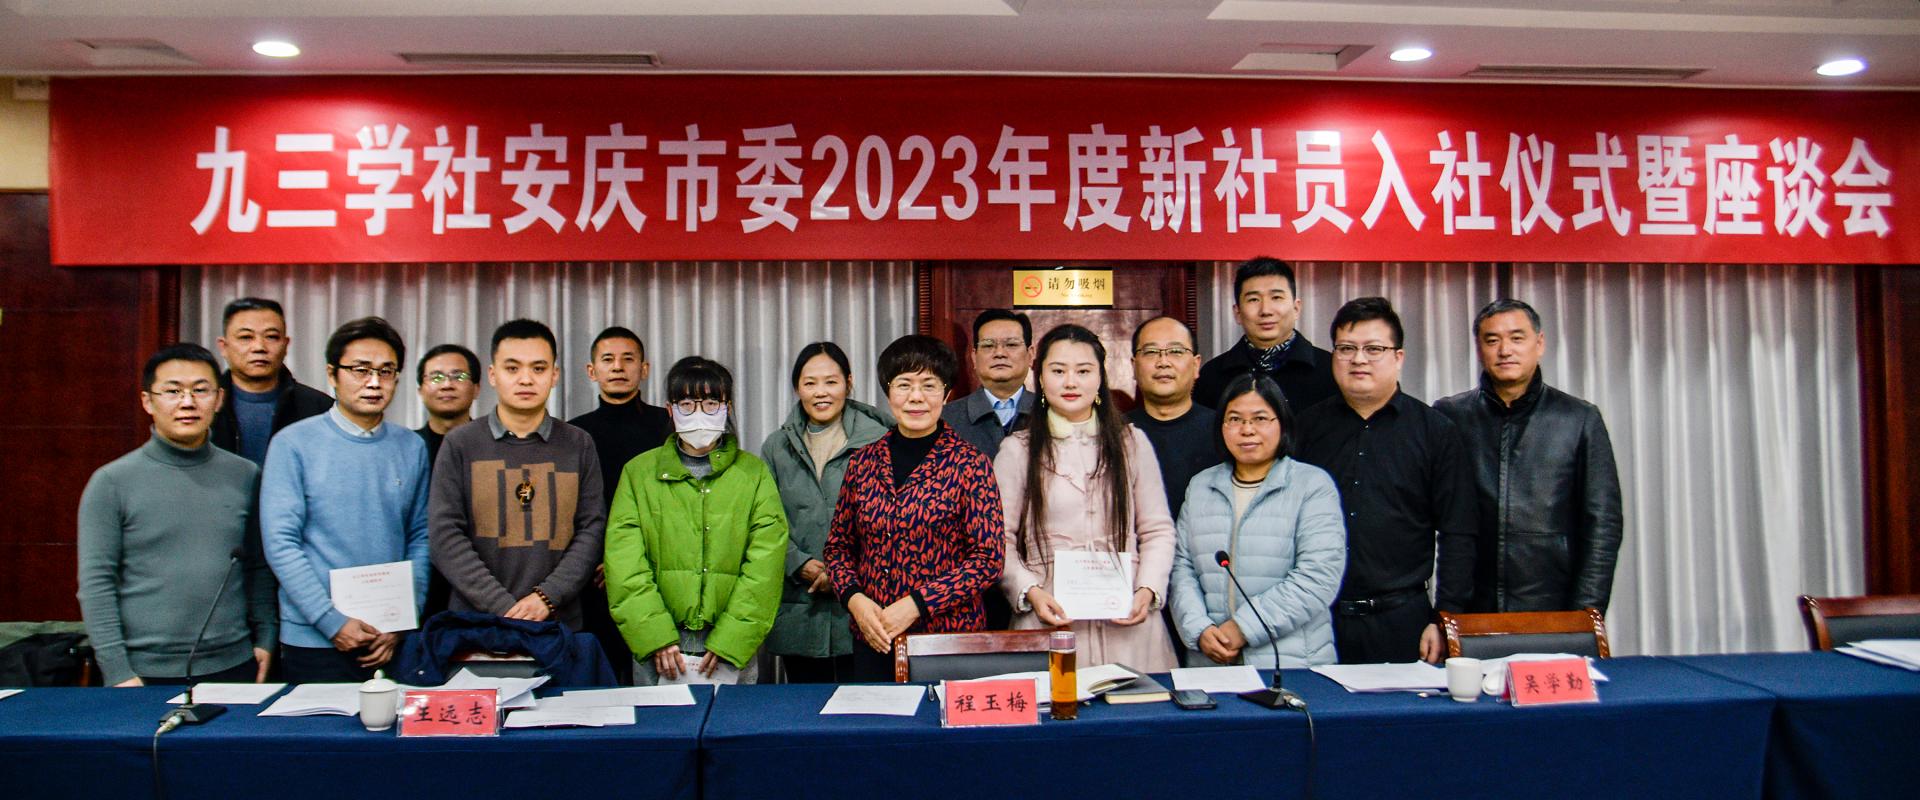 九三学社安庆市委会举办2023年度新社员入社仪式暨座谈会